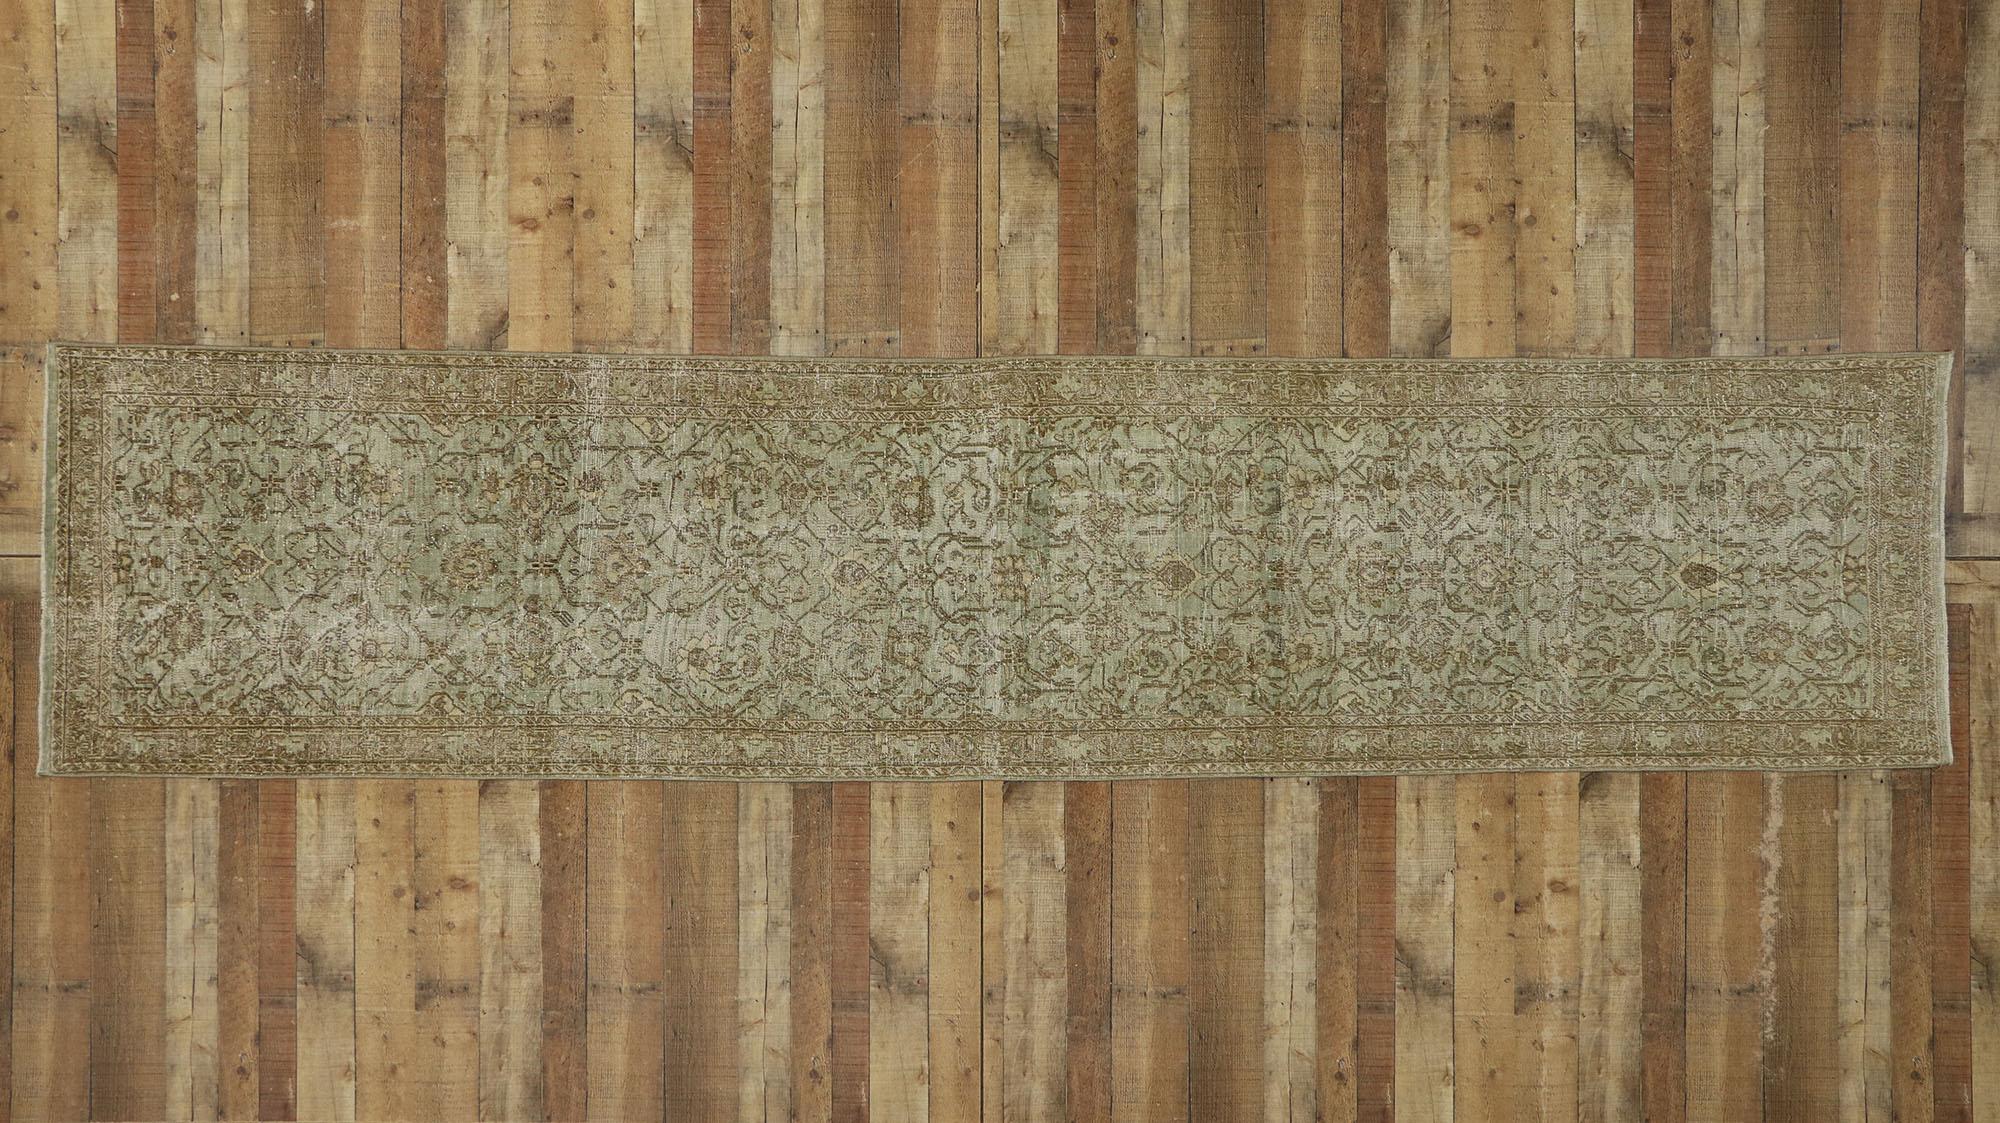 53235, chemin de table Perse Malayer ancien et vieilli, style campagne Cotswold. Avec son motif botanique intemporel et son apparence amoureusement usée par le temps, ce chemin de table Malayer en laine nouée à la main et usée par le temps charme